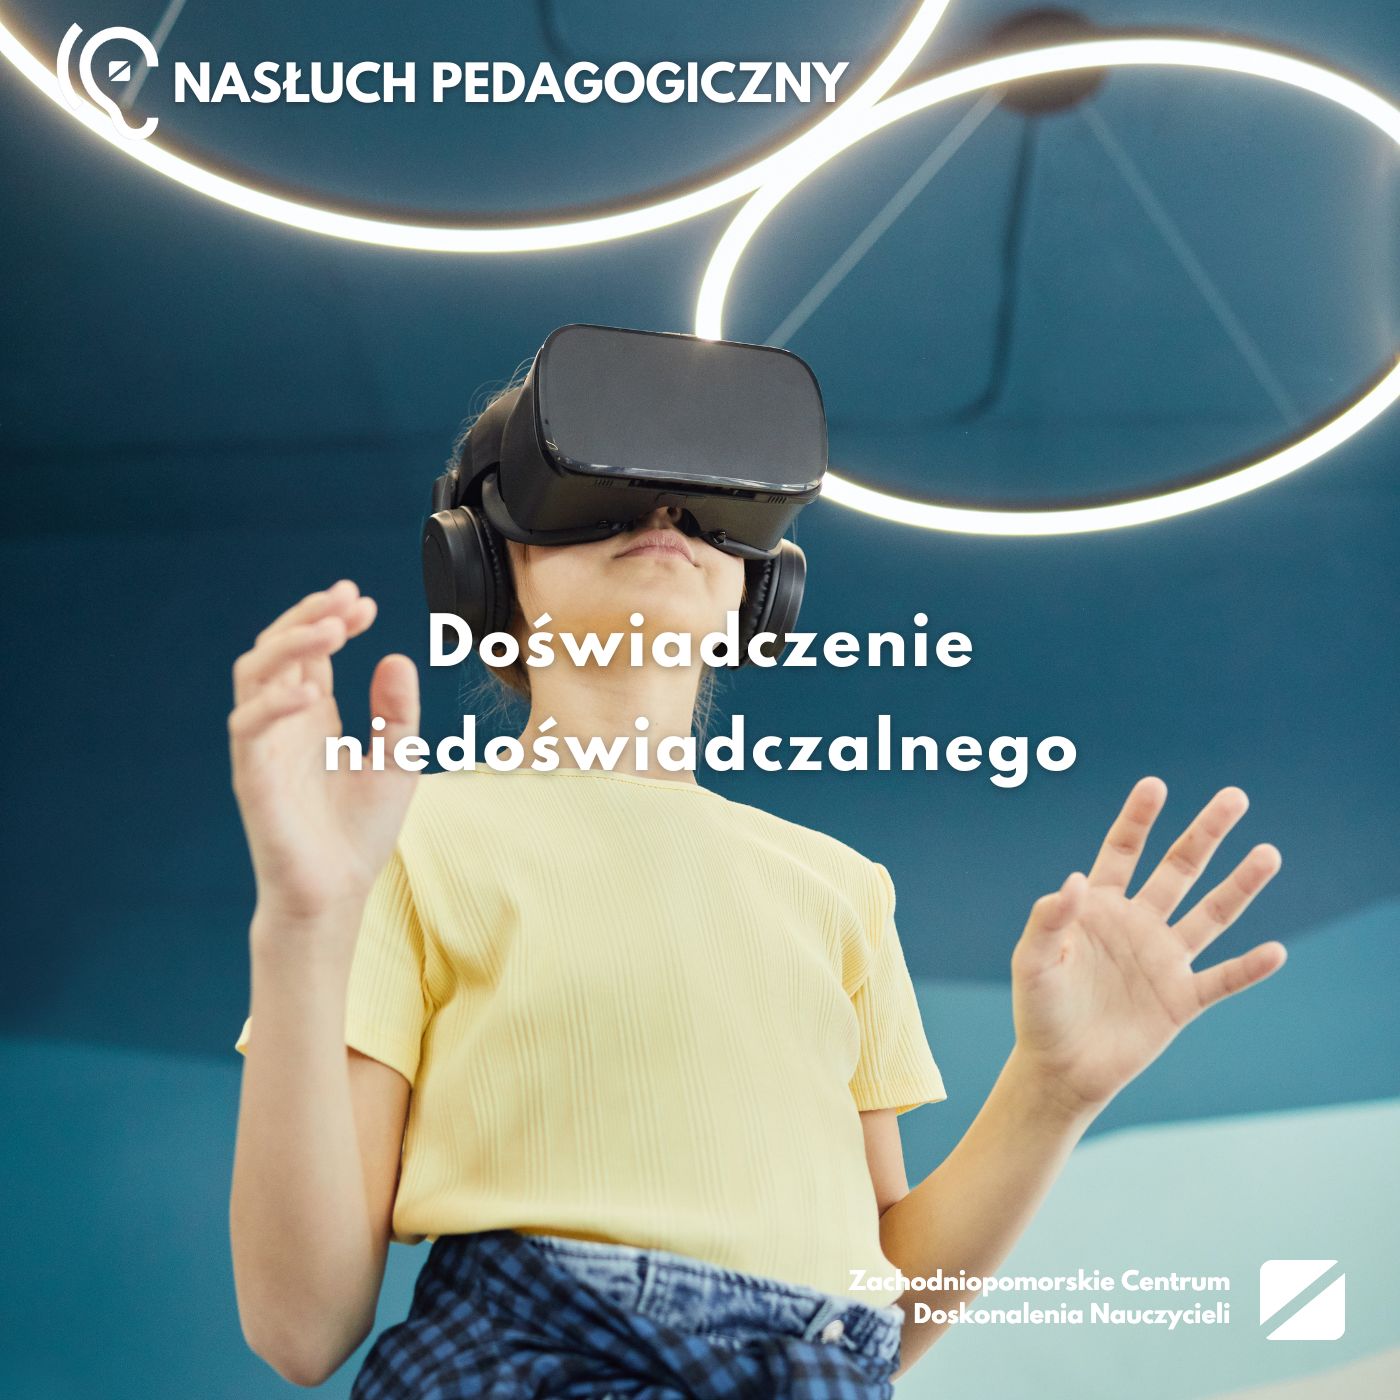 Nasłuch pedagogiczny: Doświadczenie niedoświadczalnego – rzeczywistość wirtualna w szkole